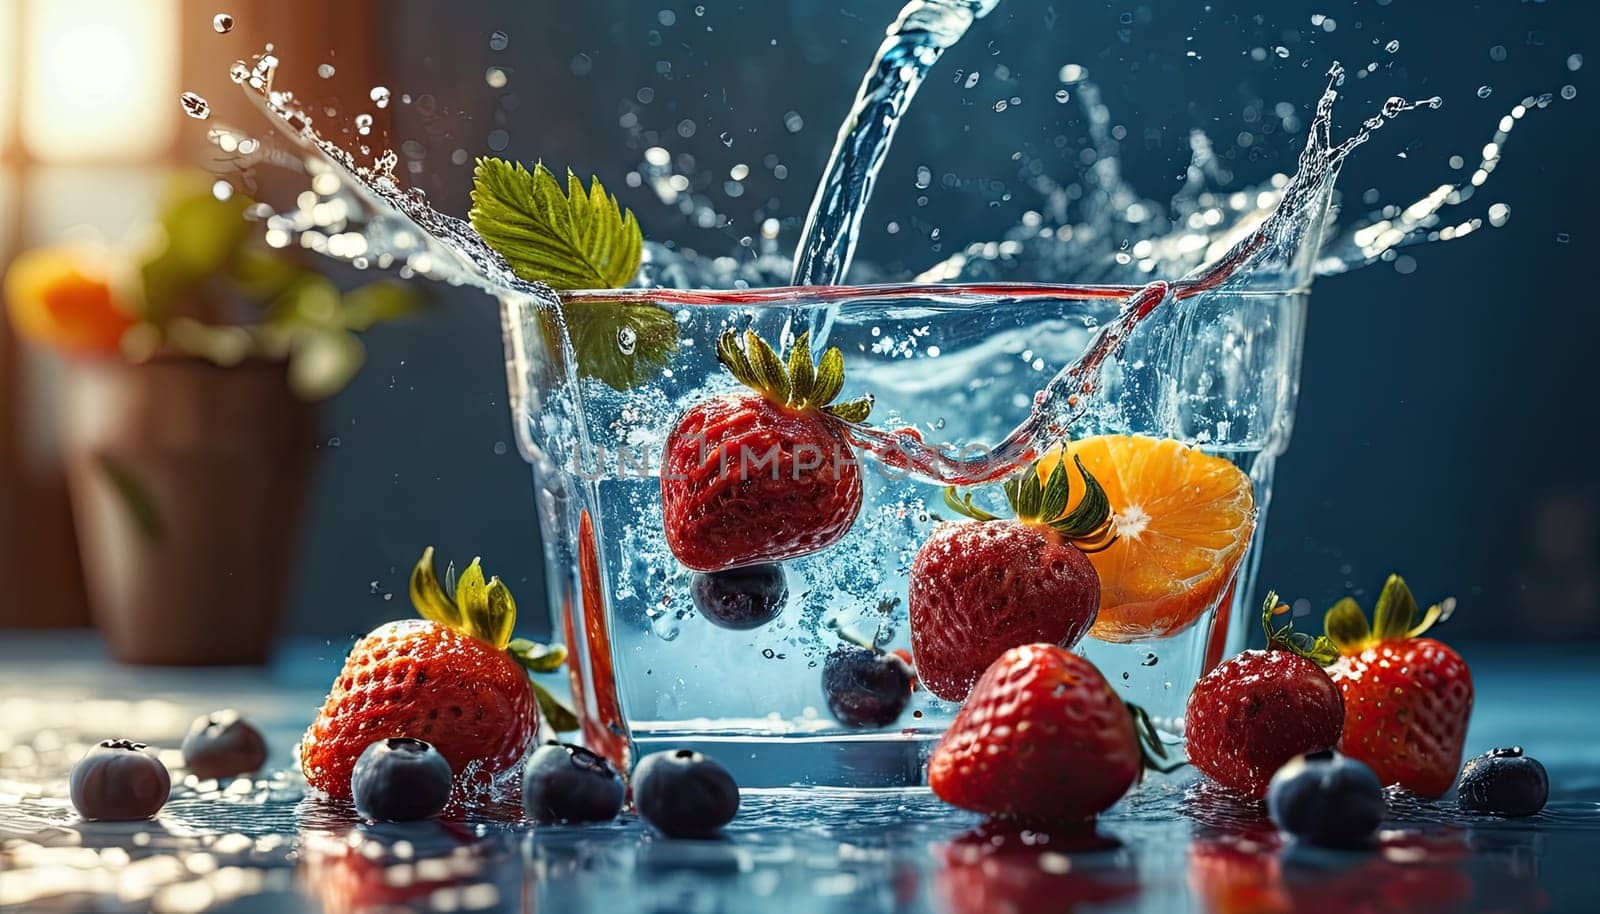 berries in water splash. Strawberries, oranges, blueberries in glass of fruit-infused water